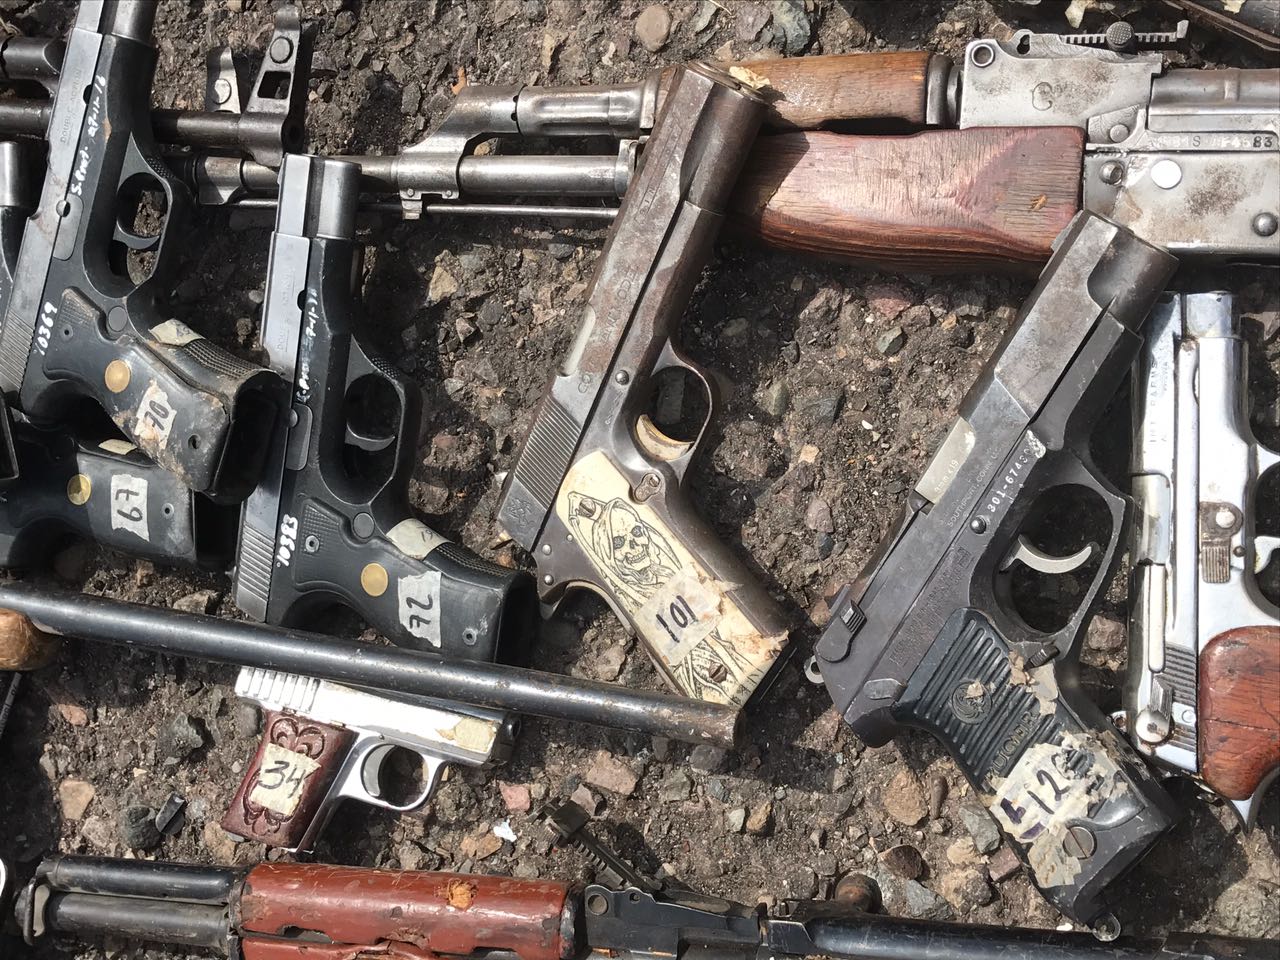 armas en Sinaloa